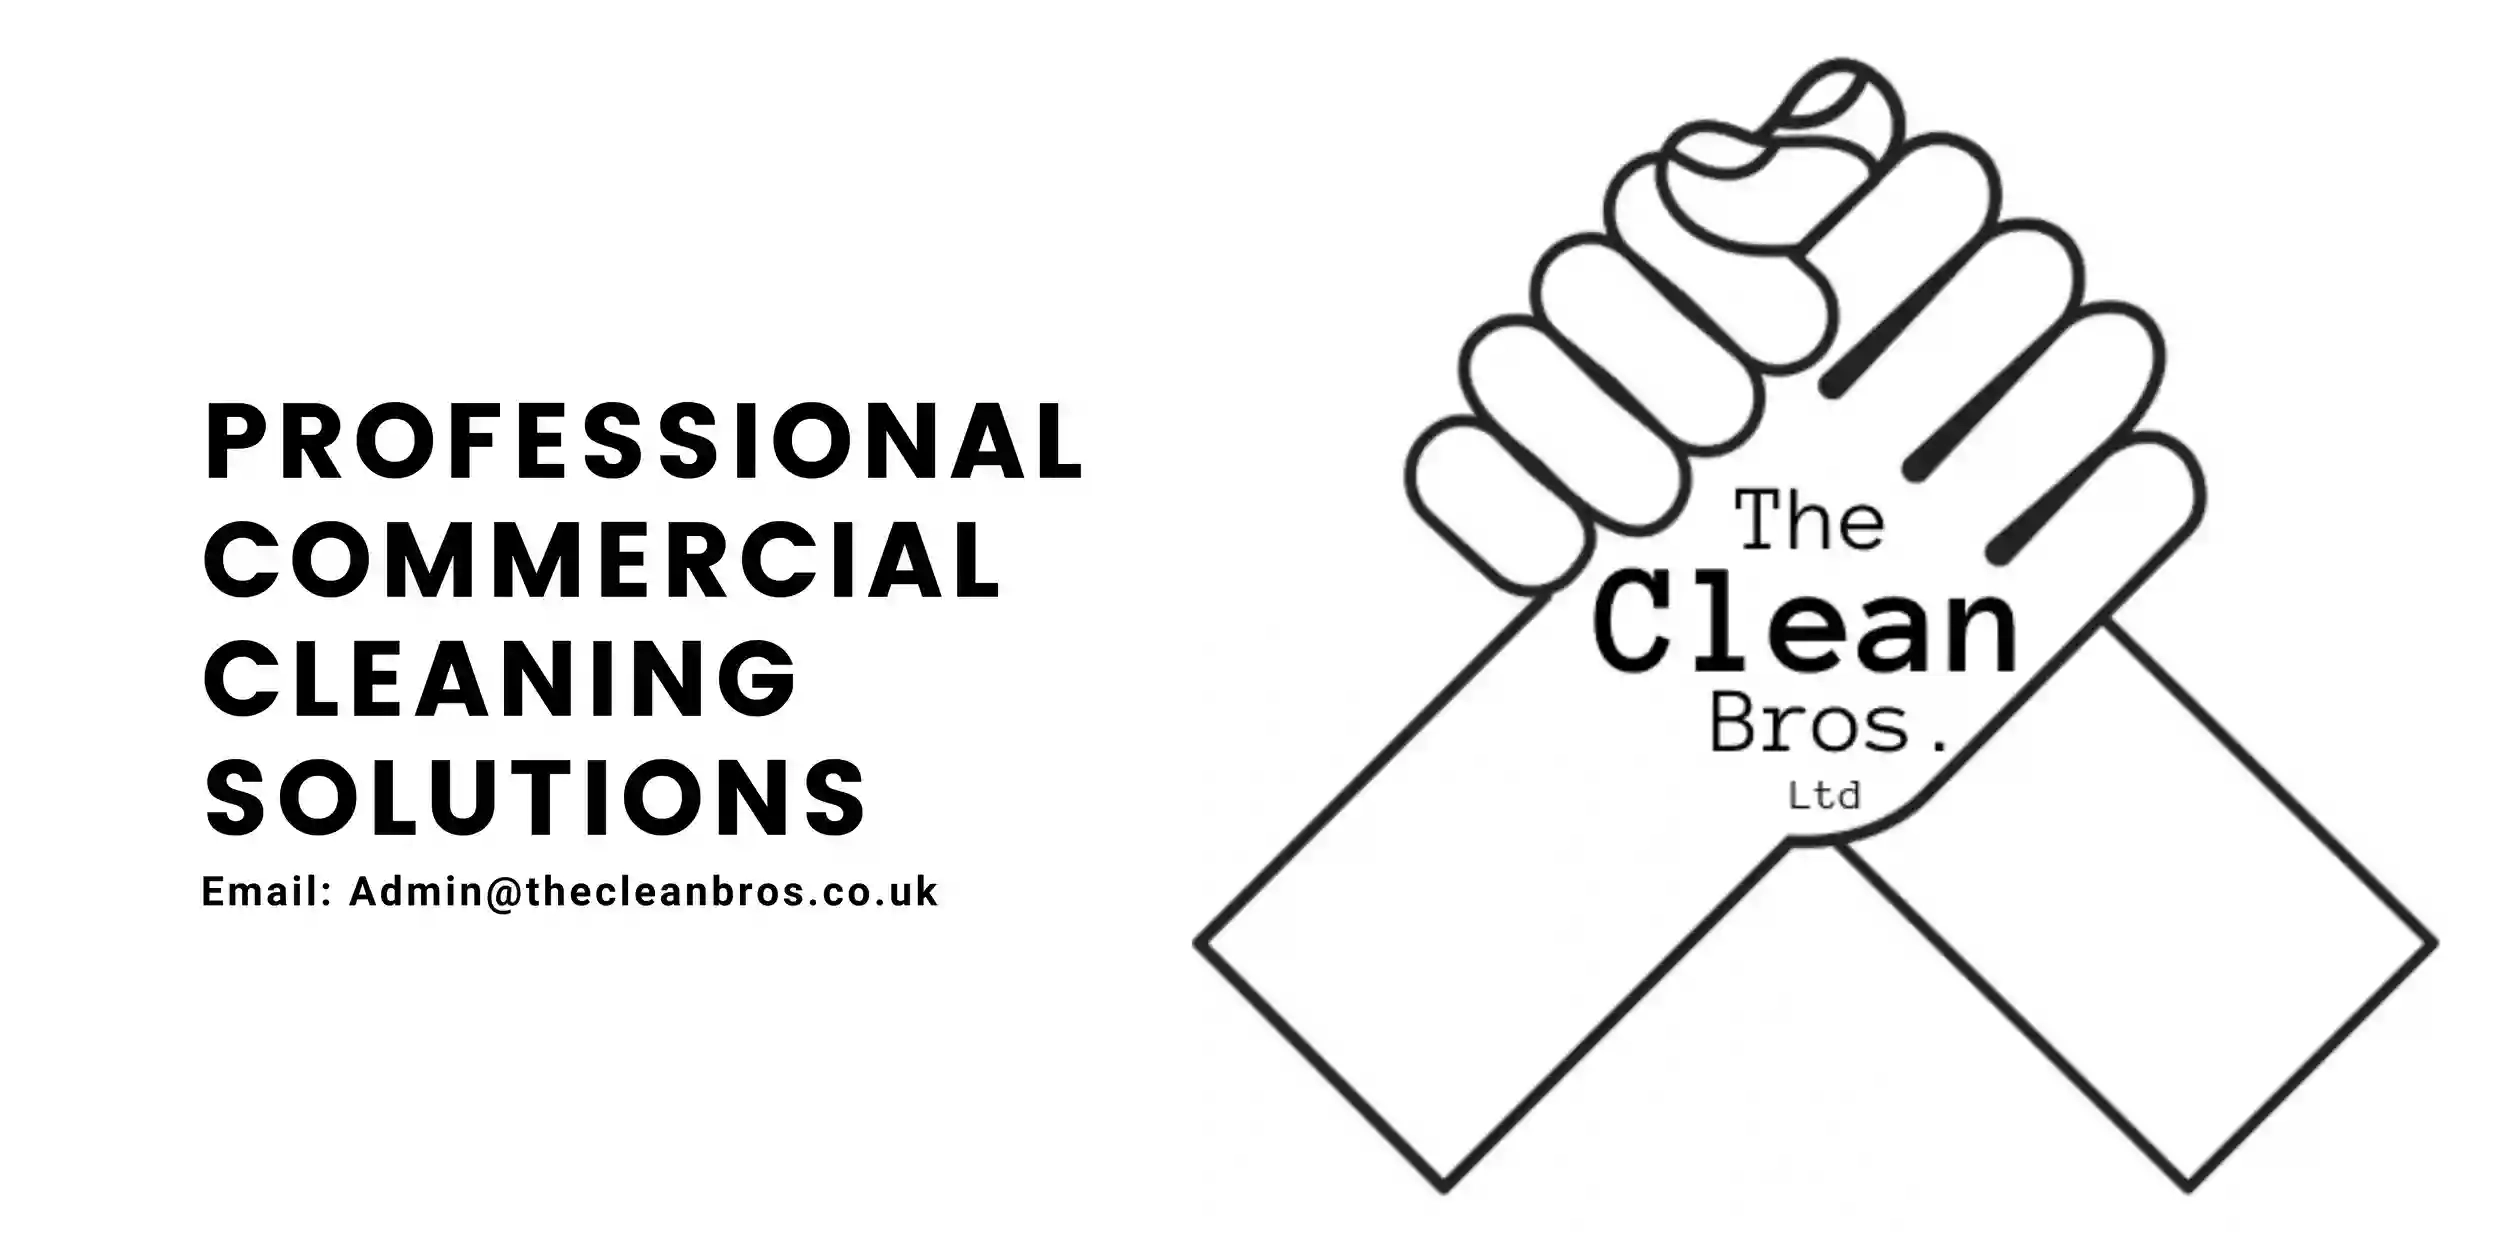 The Clean Bros. Ltd